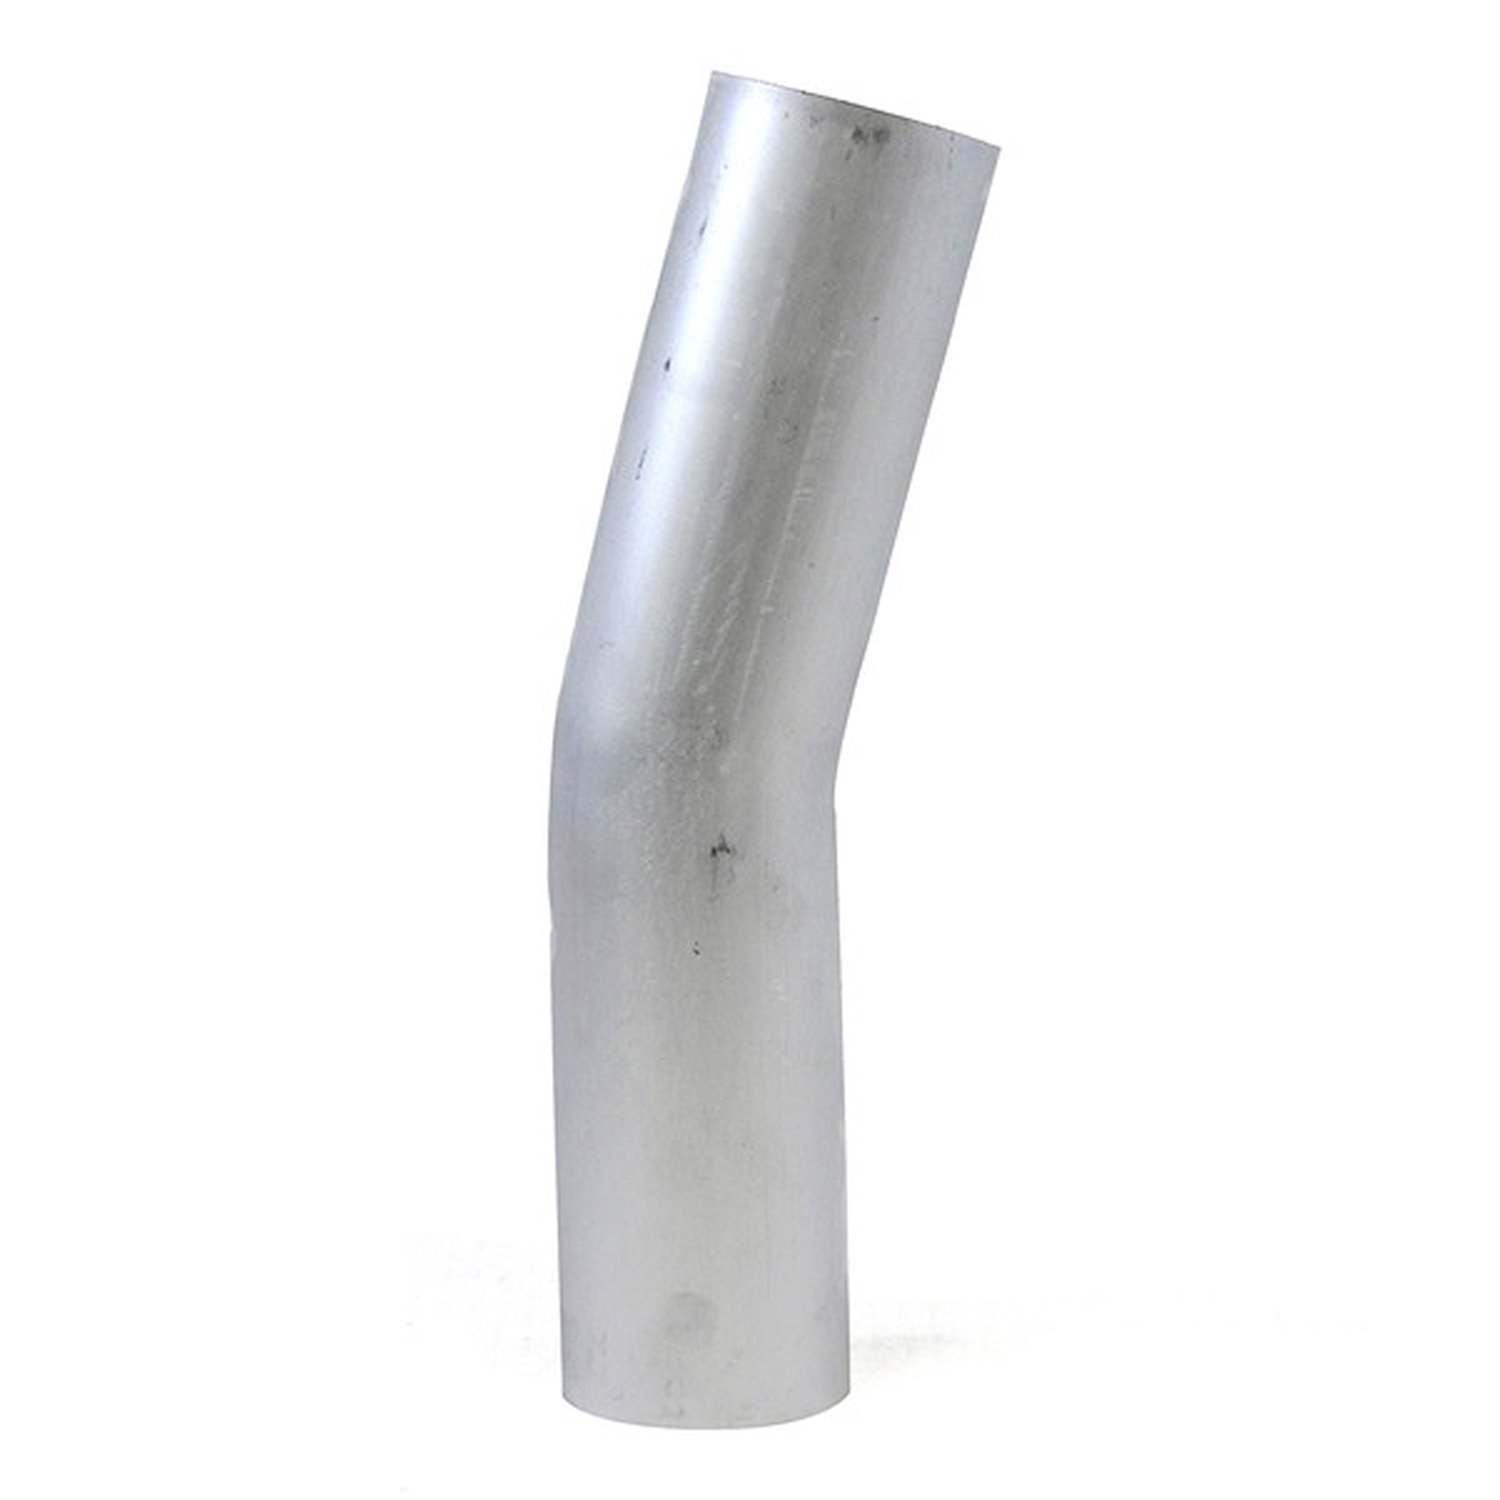 AT15-225-CLR-225 Aluminum Elbow Tube, 6061 Aluminum, 15-Degree Bend Elbow Tubing, 2-1/4 in. OD, Tight Radius, 2-1/4 in. CLR